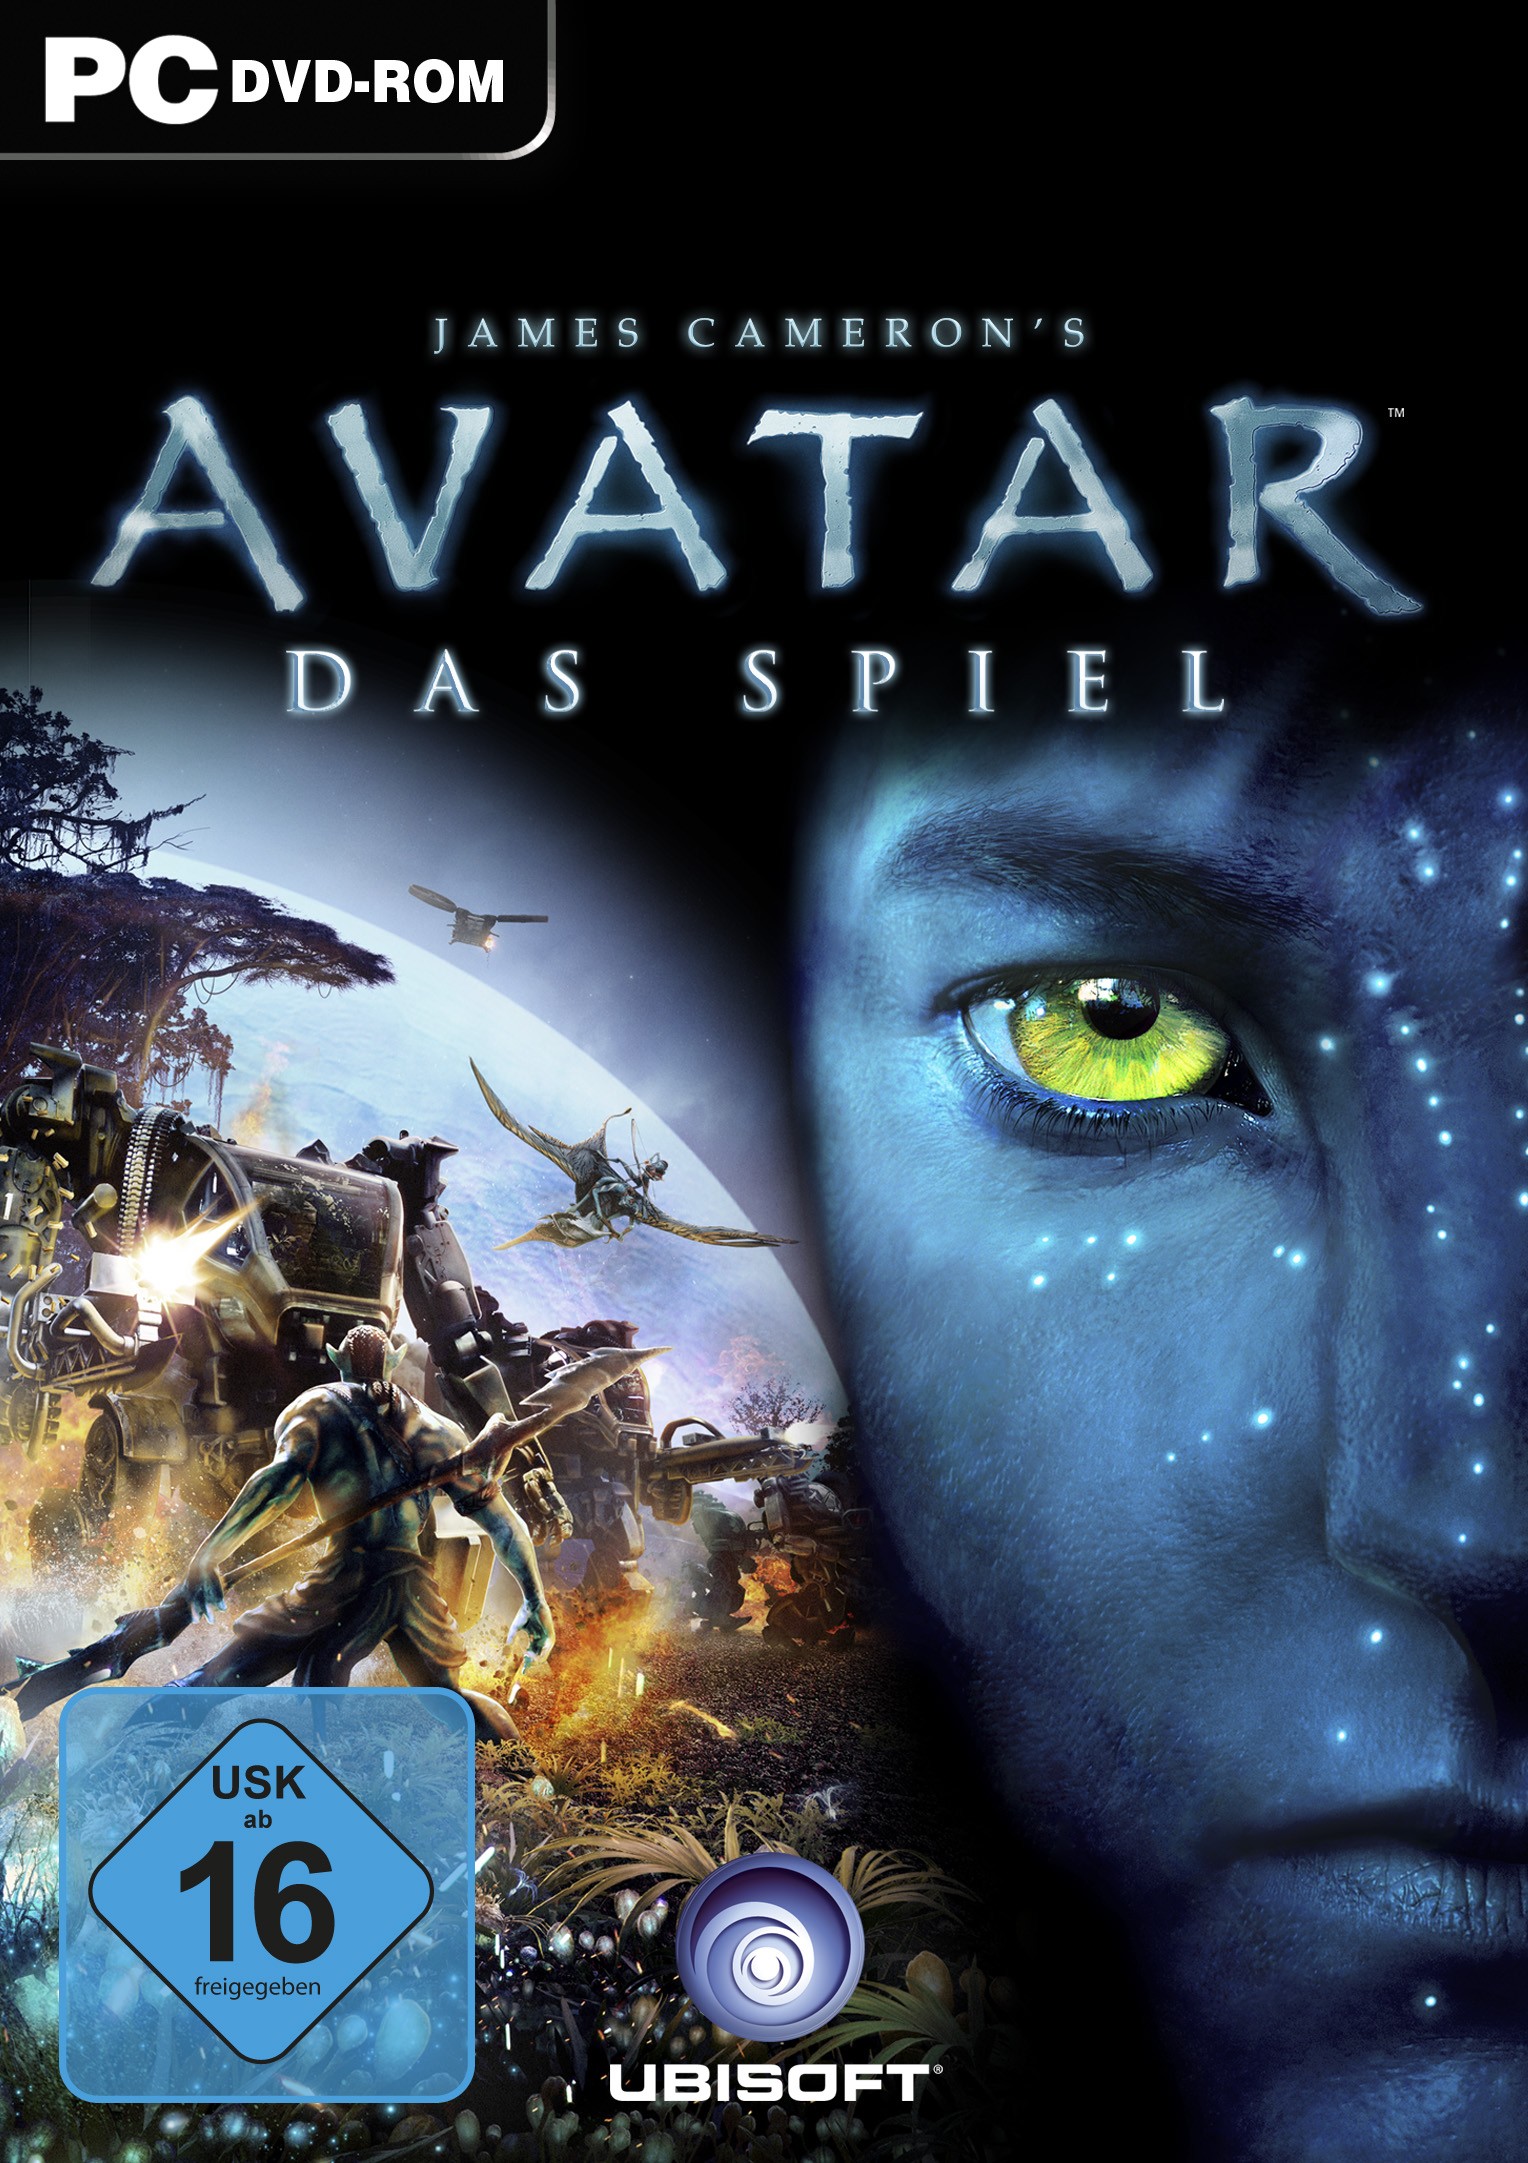 Avatar Spiele